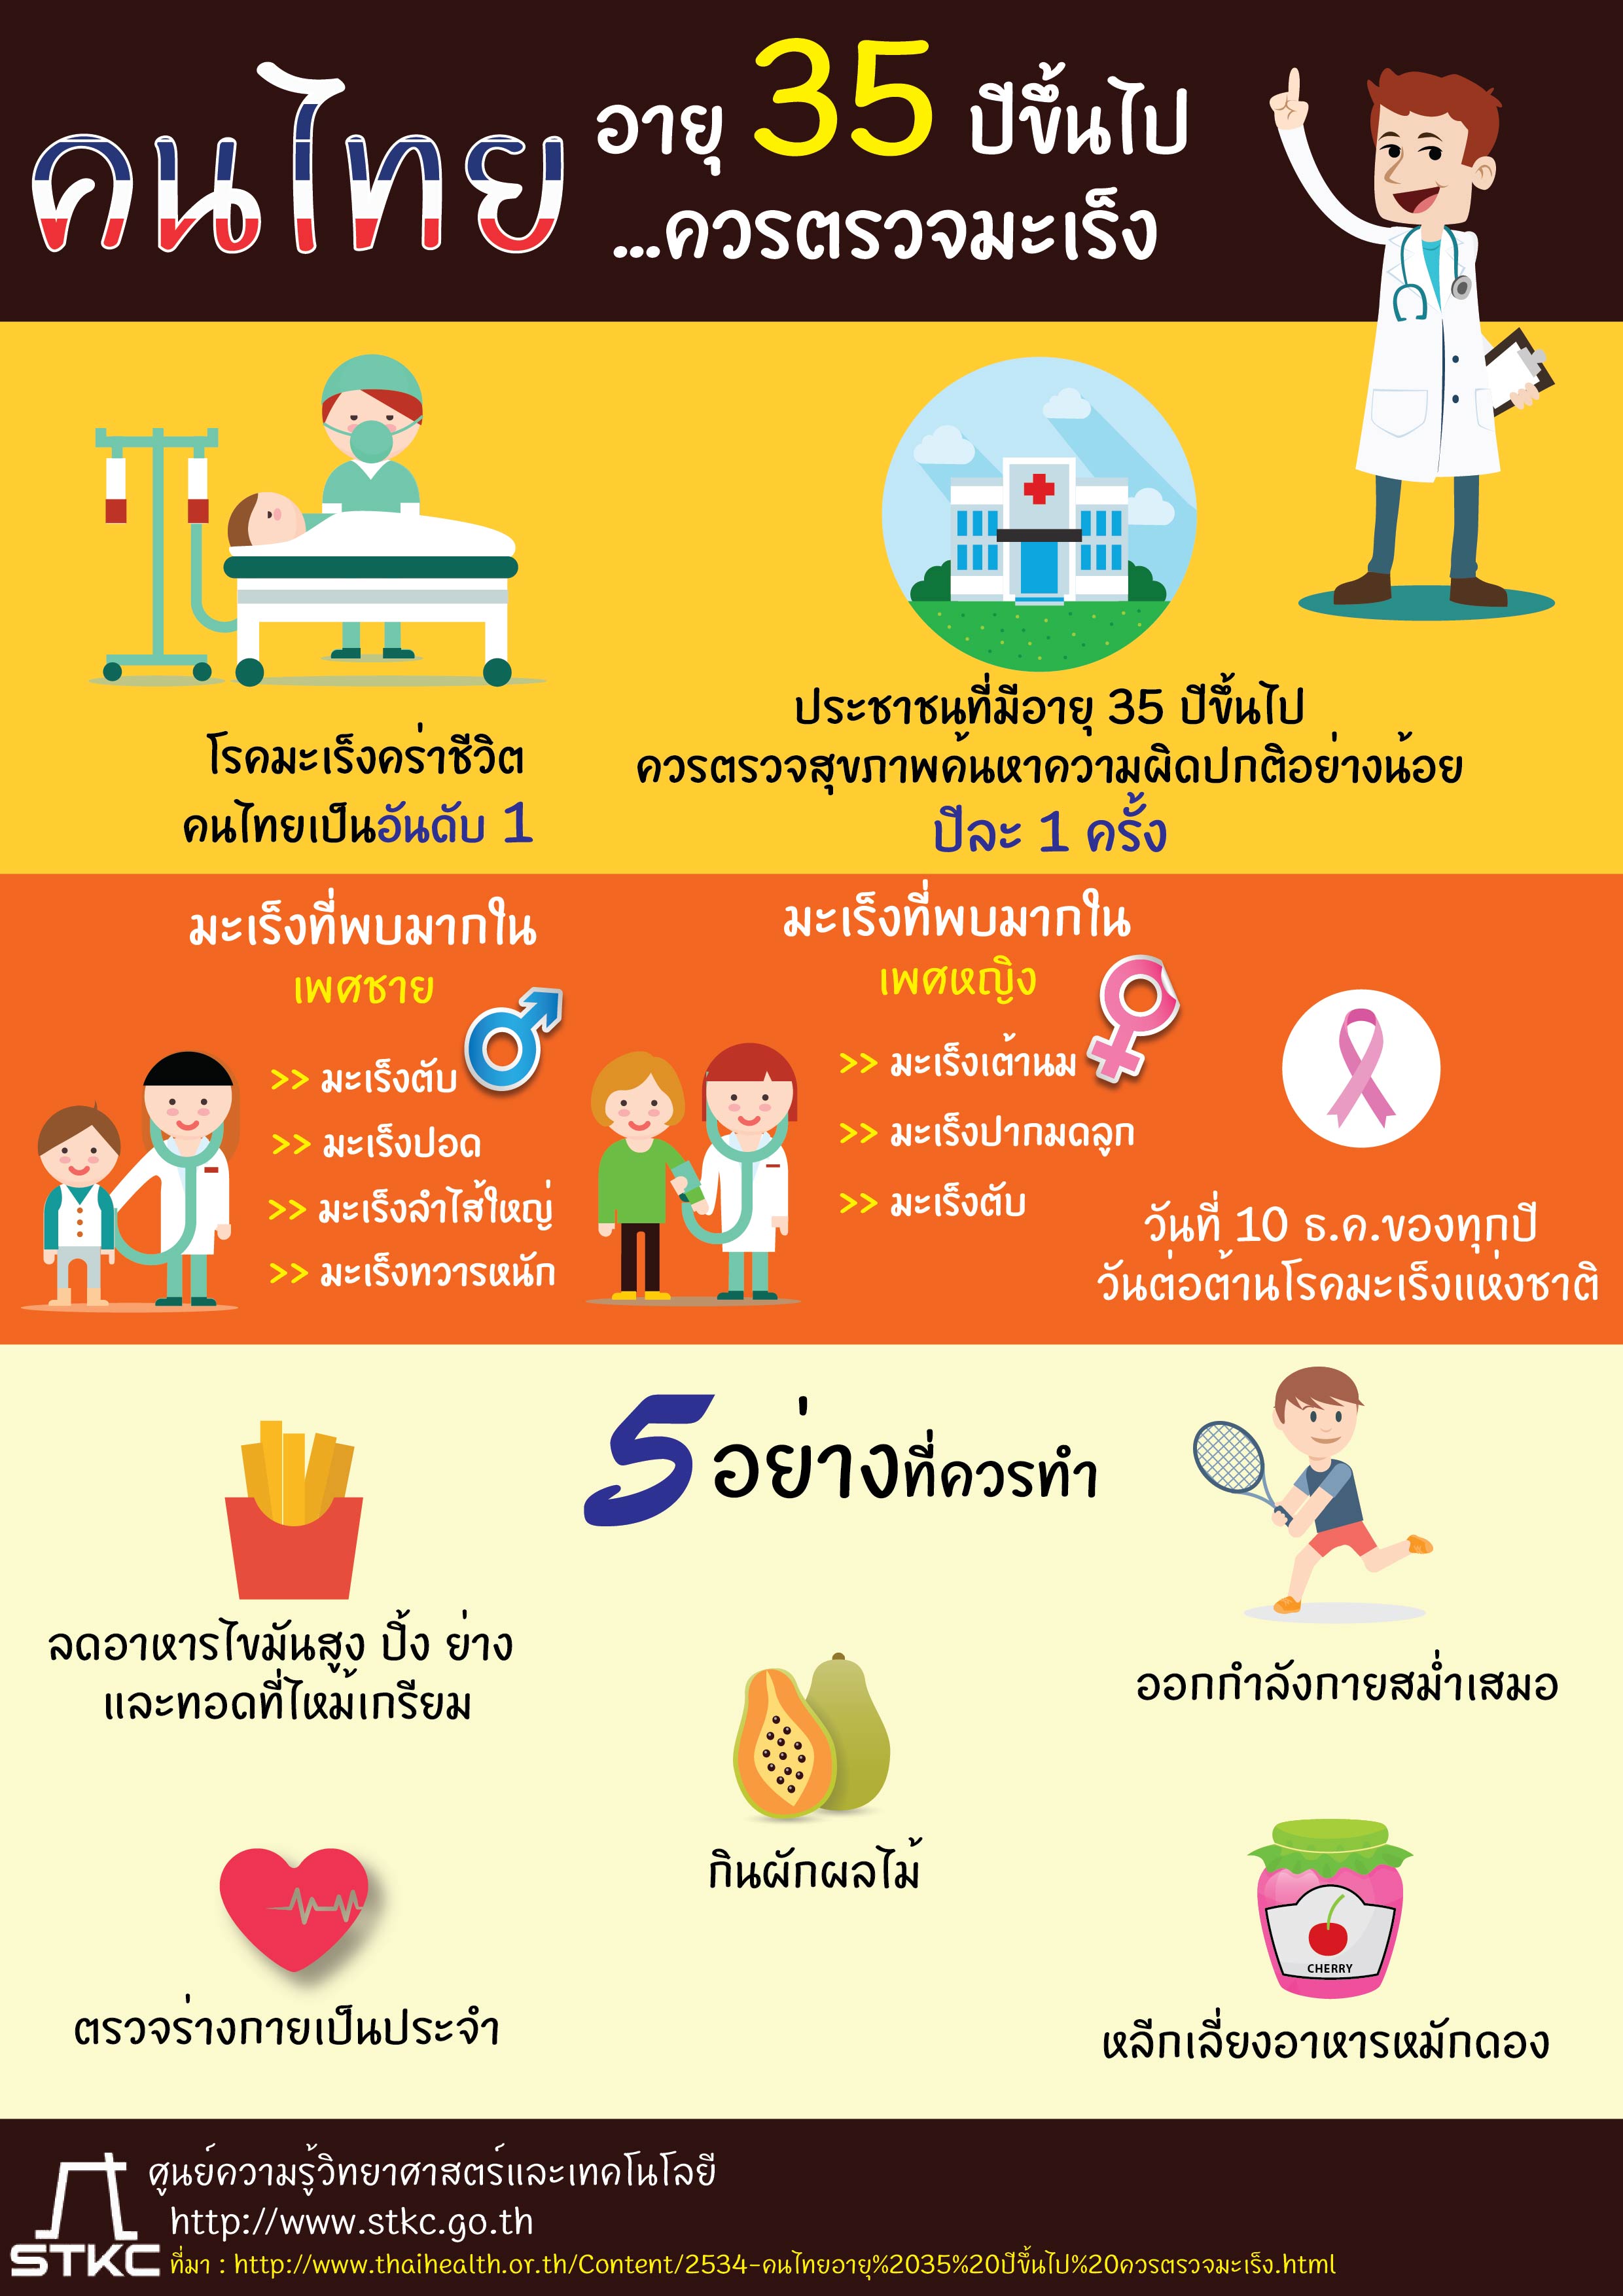 คนไทยอายุ 35 ปี ควรตรวจมะเร็ง